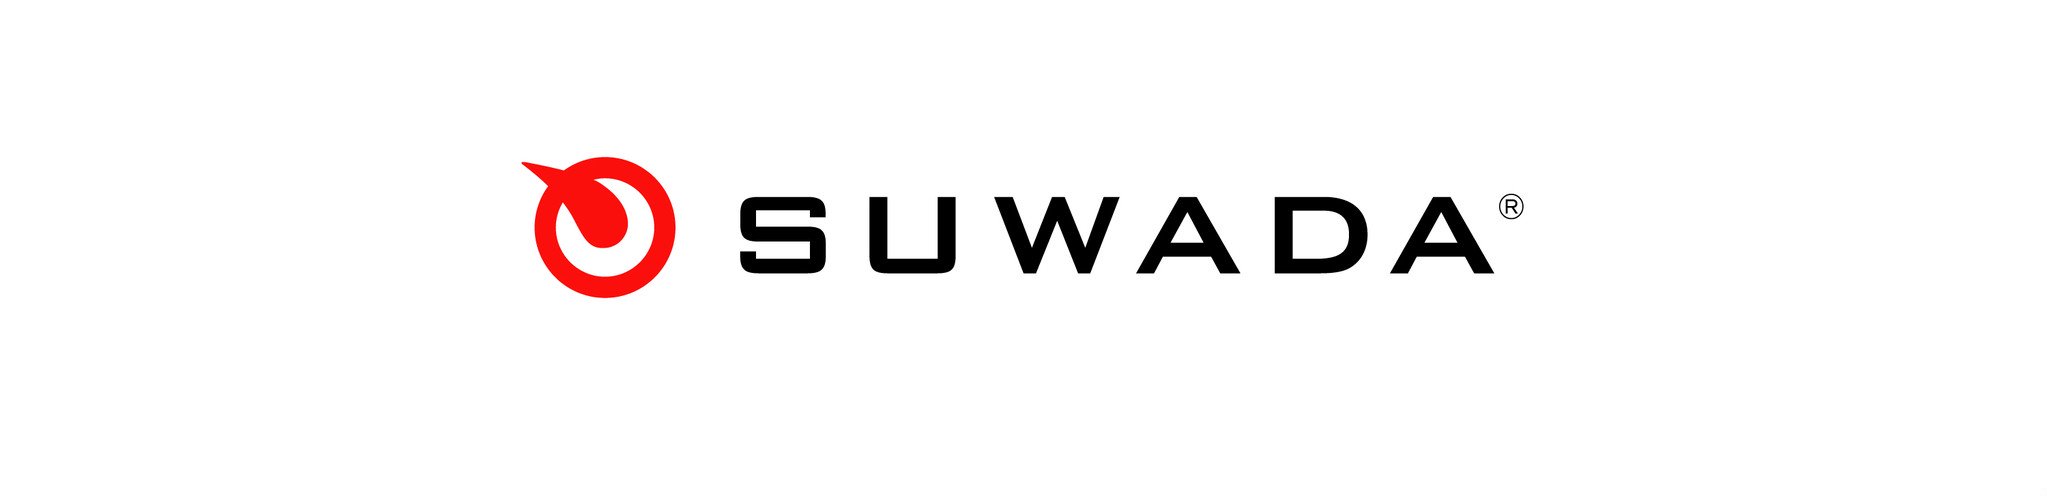 SUWADA ONLINE SHOP